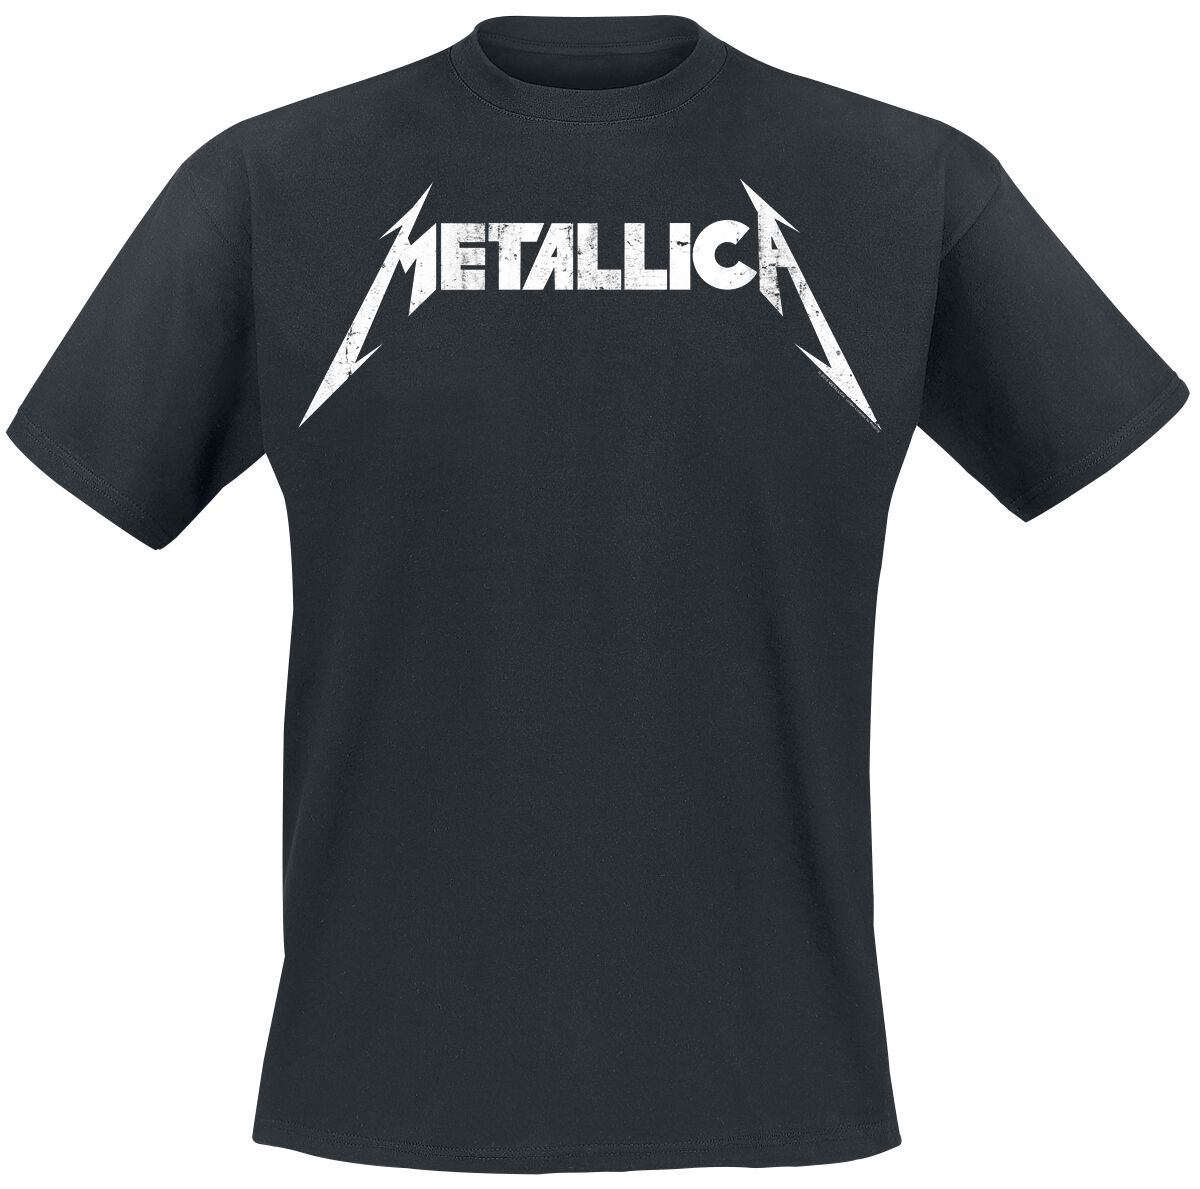 Metallica T-Shirt - Textured Logo - S bis 5XL - für Männer - Größe 4XL - schwarz  - Lizenziertes Merchandise!